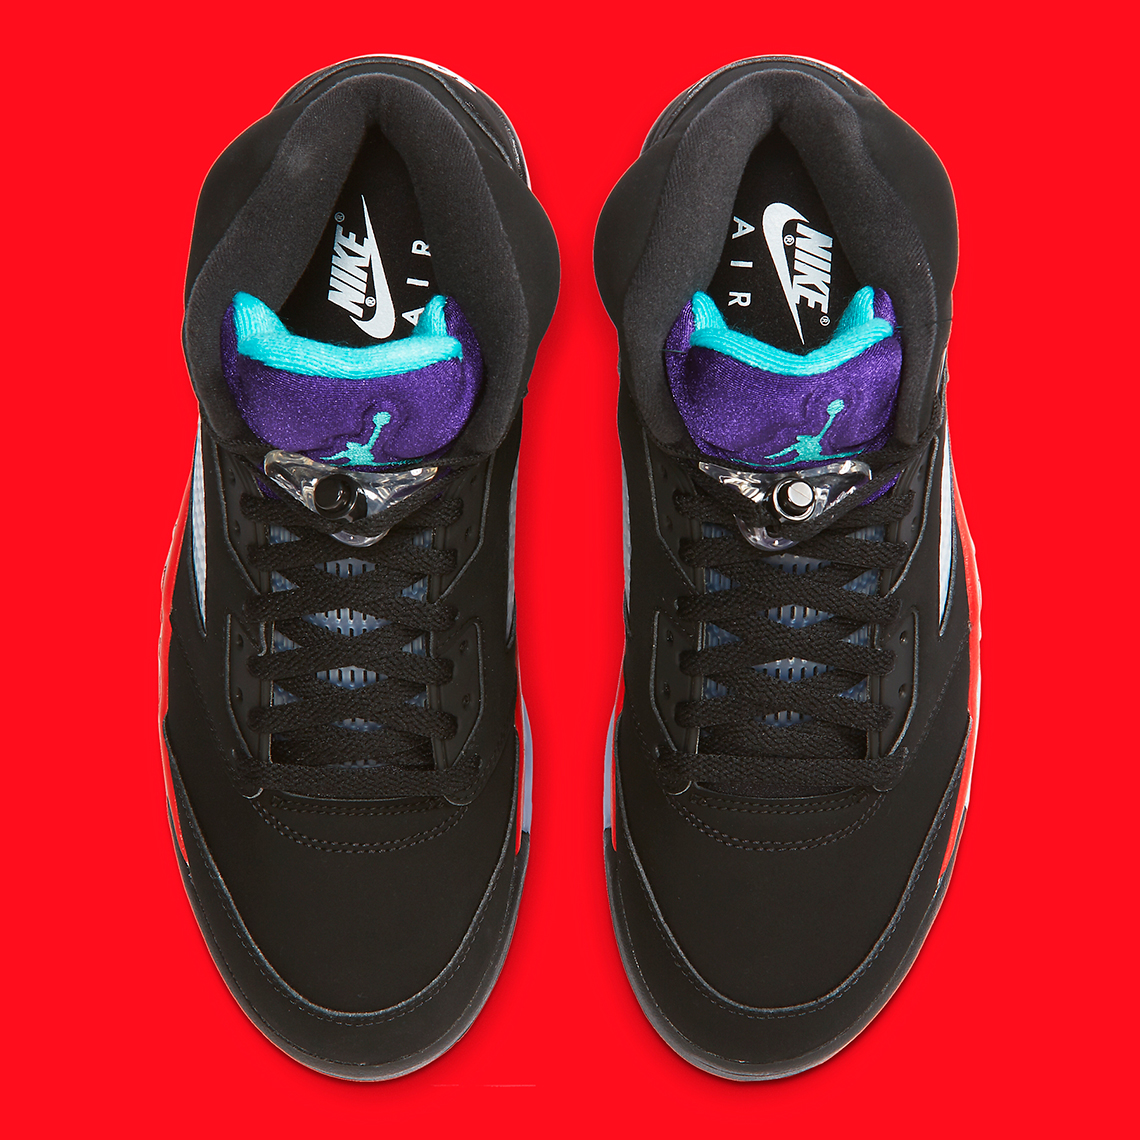 Jordan Brand reveals an official look a the Air Jordan 3 Muslin releasing in March Top 3 Cz1786 001 6